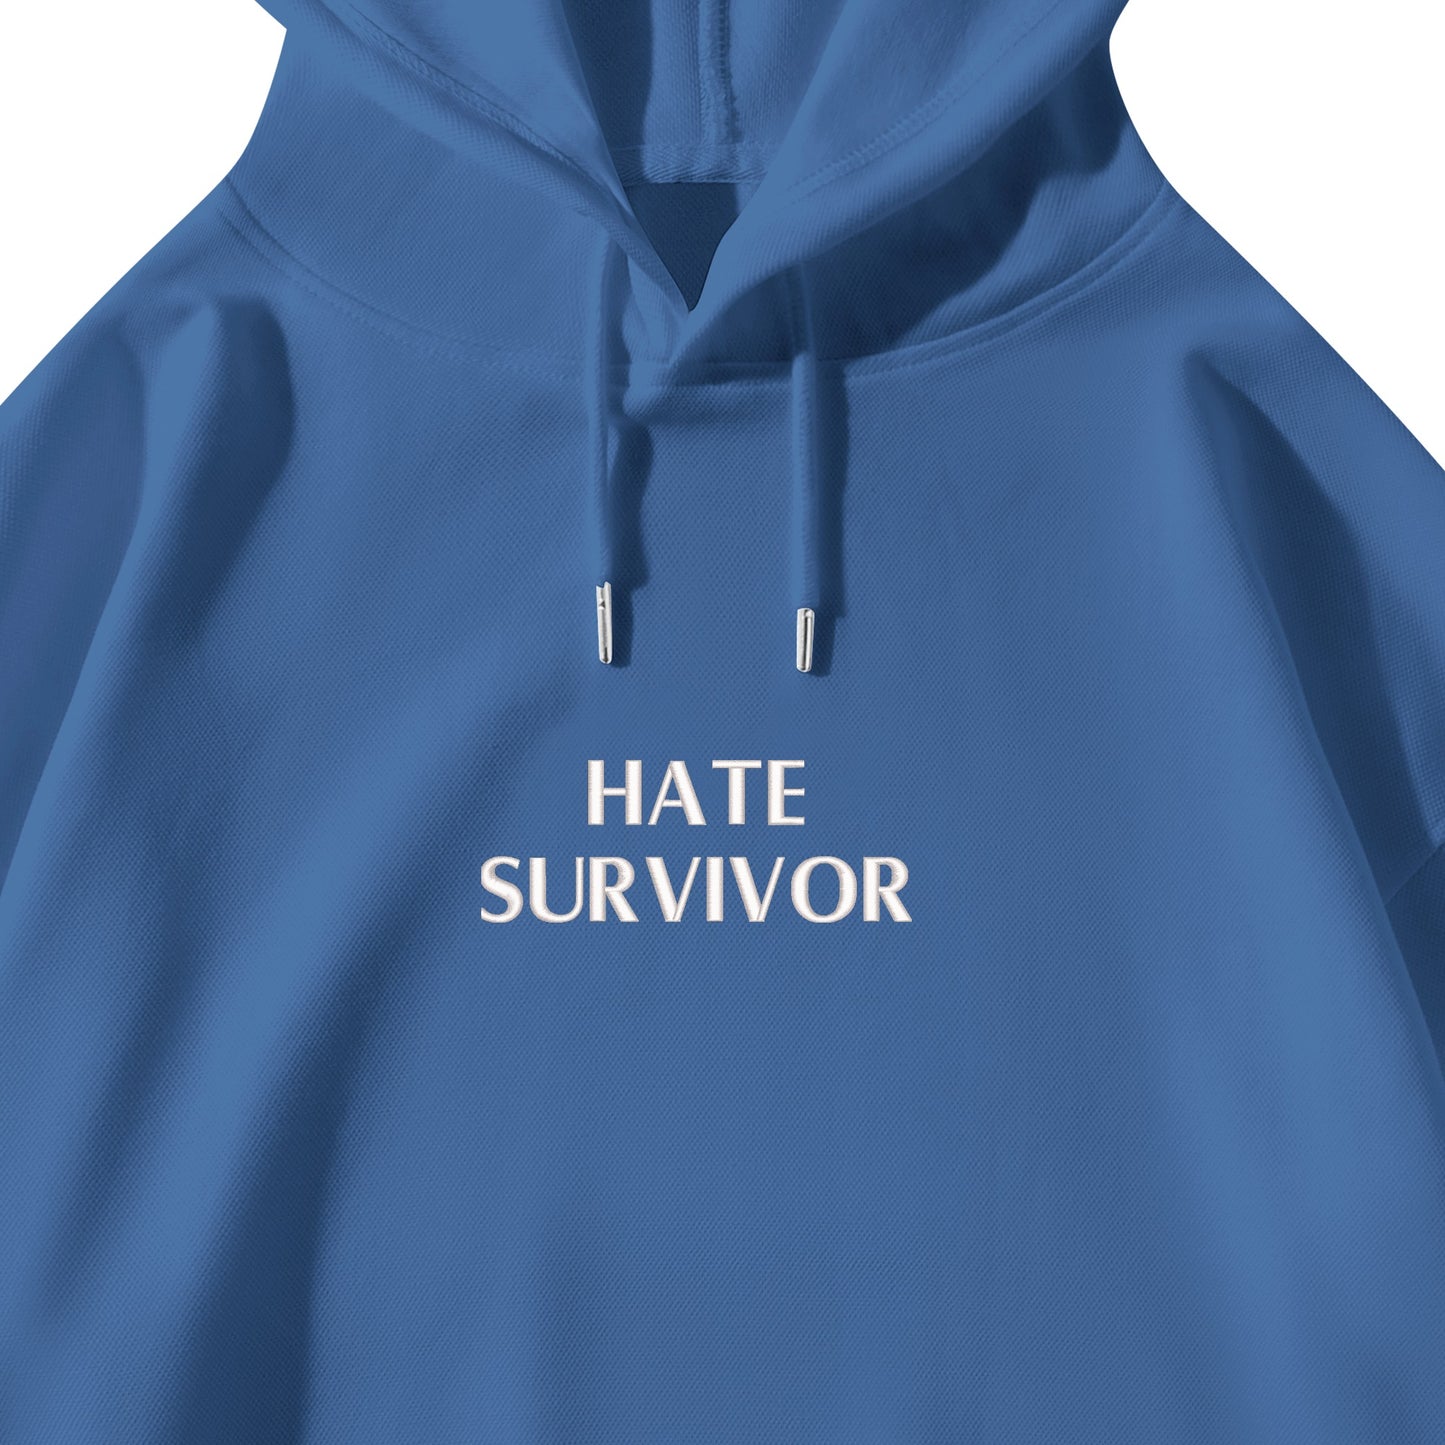 Hate Survivor Garment